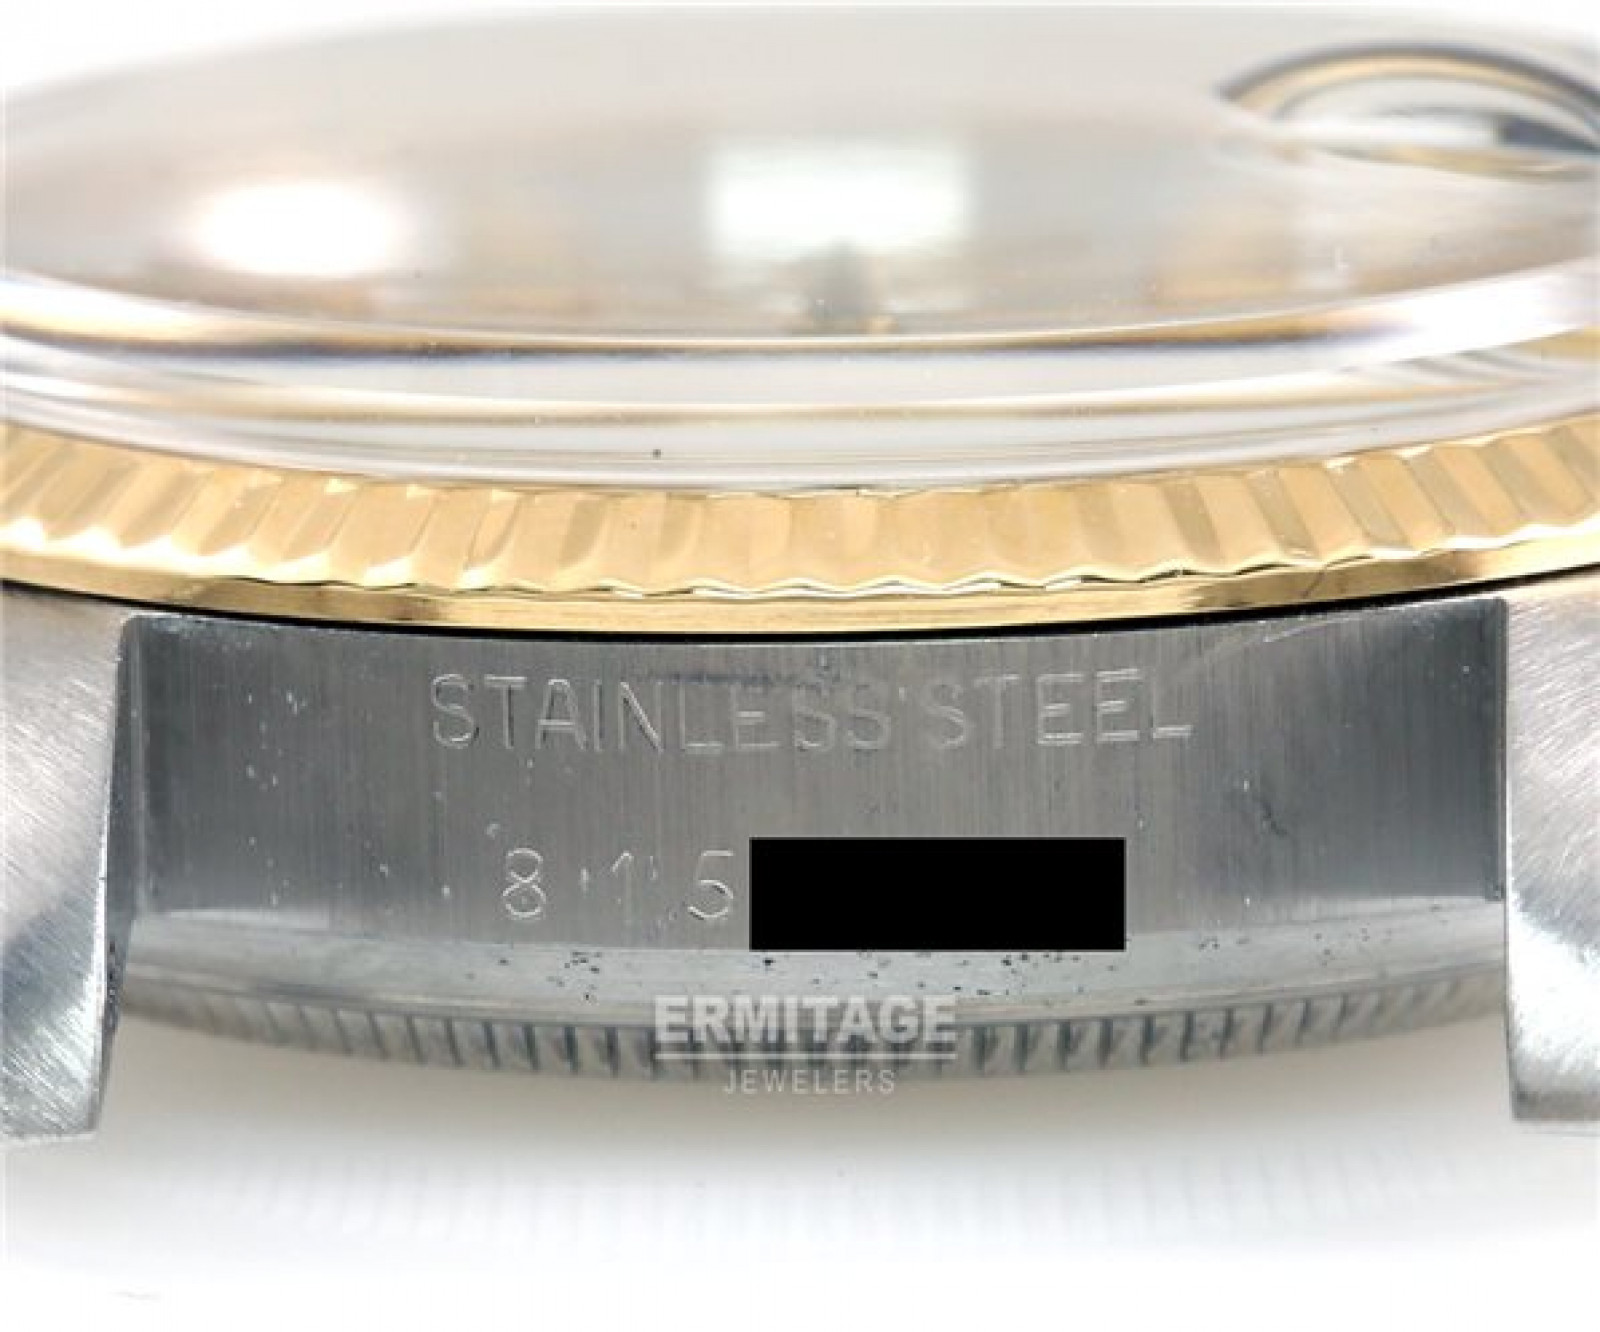 Rolex Datejust 16013 Gold & Steel 1983